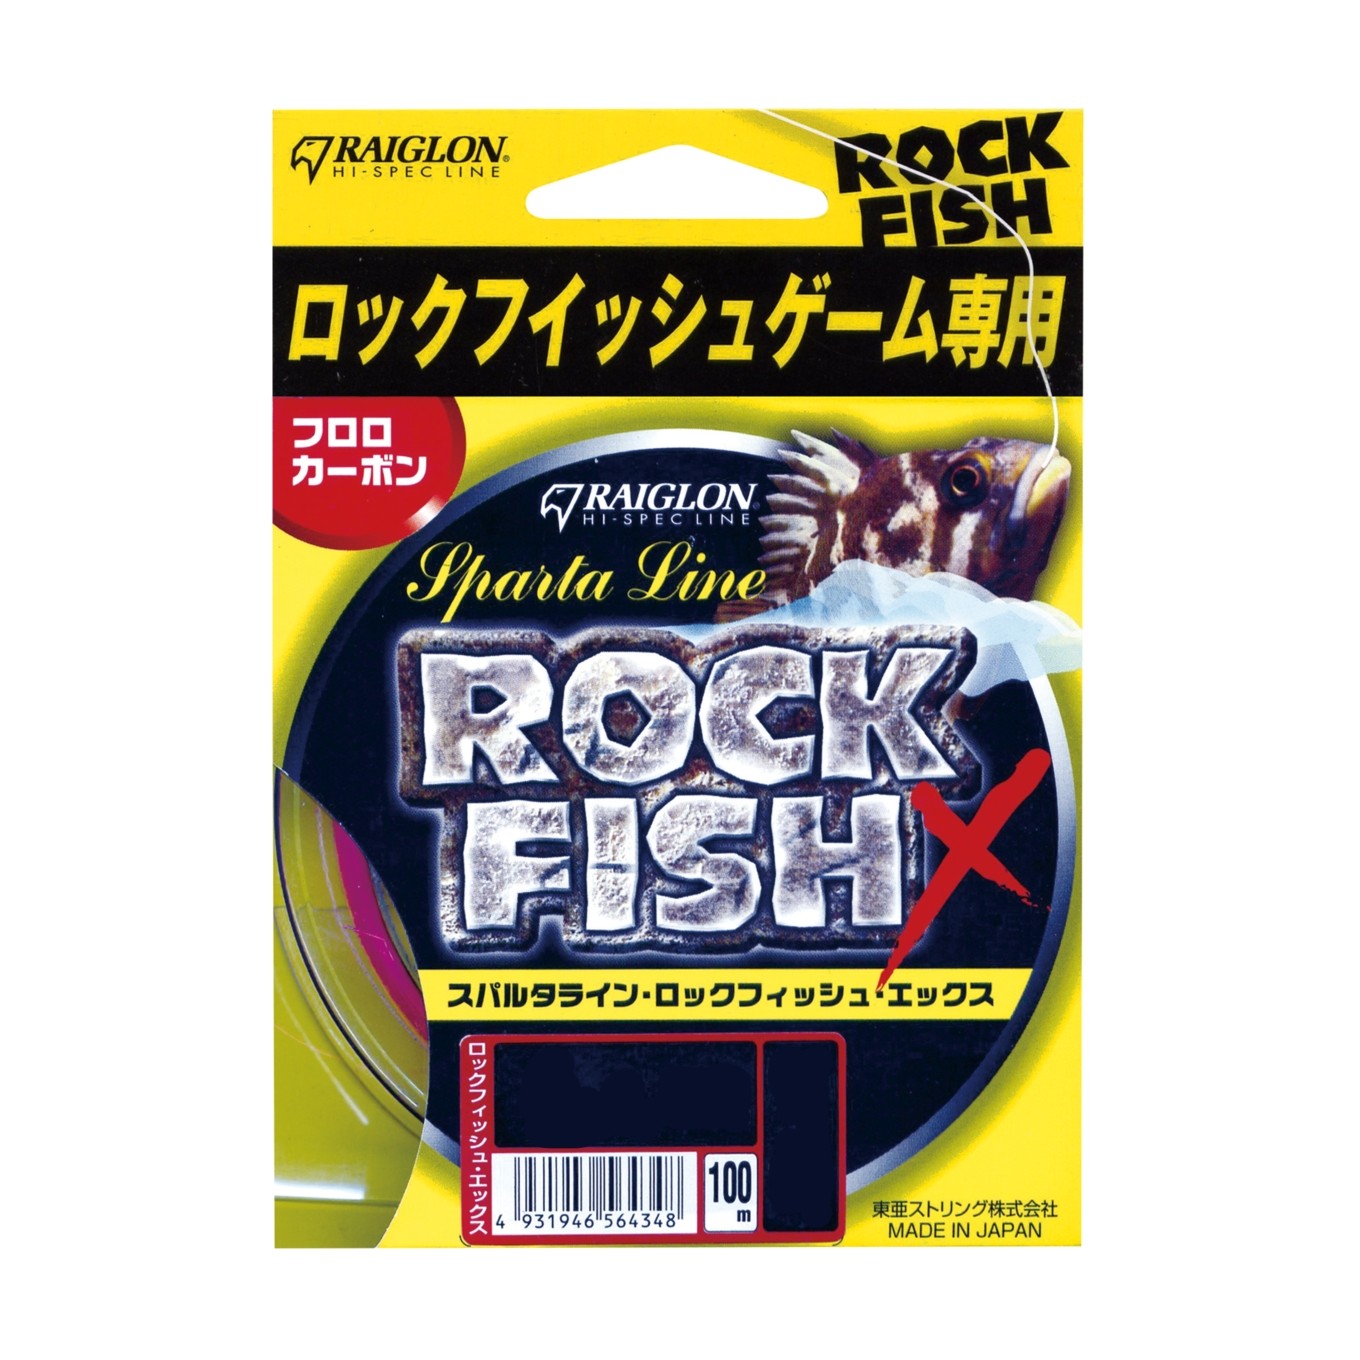 Леска Raiglon Rock fish x  fluorocarbon fluo pink 100м 1,5/0,205мм - фото 1